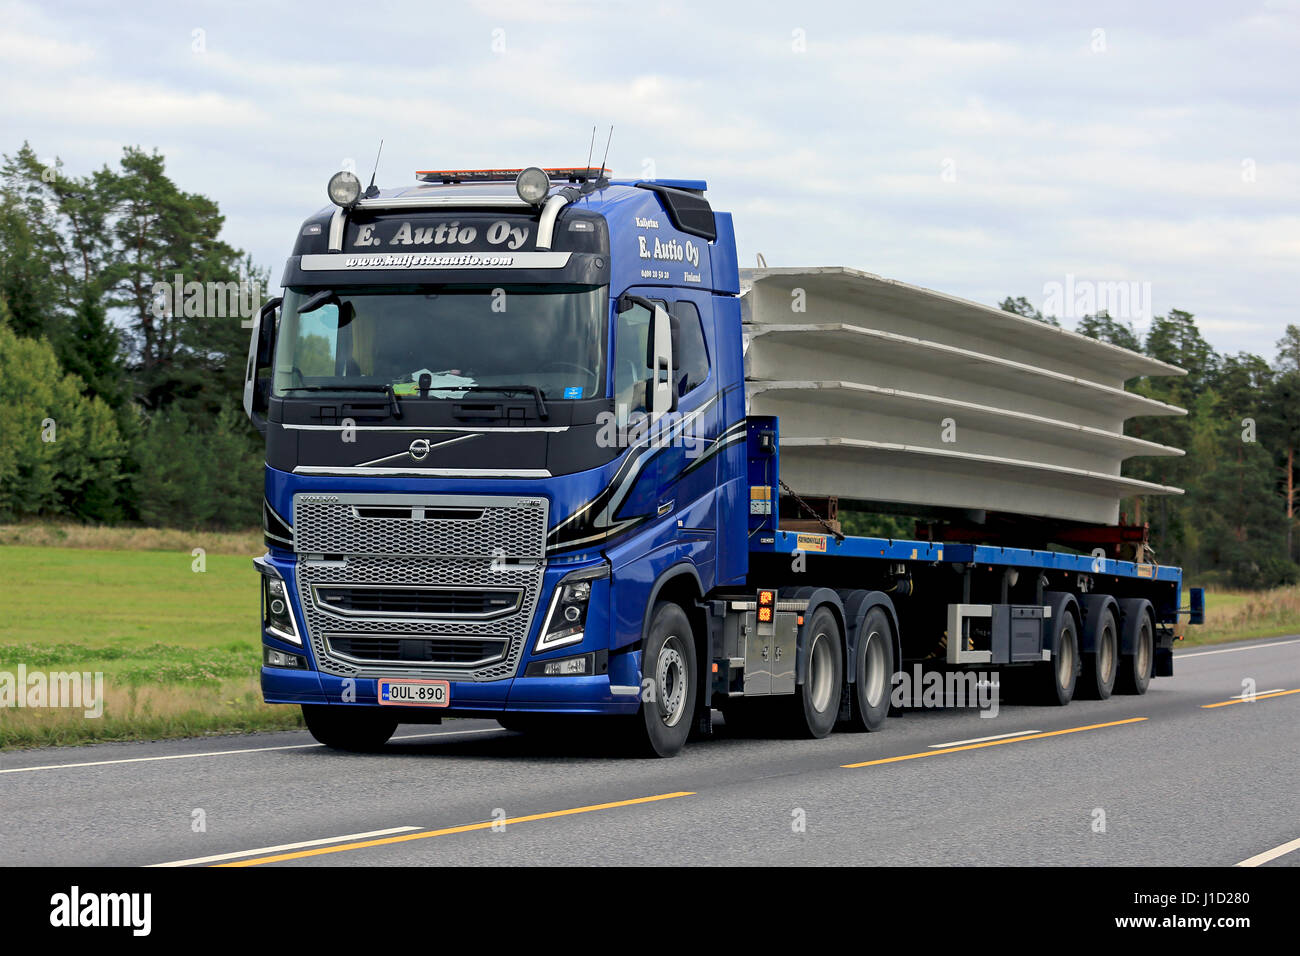 KAARINA, FINLANDE - septembre 9, 2016 : Blue Volvo FH16 semi de E. Autio Oy transporte le béton sur remorque plate le long de la route un jour nuageux. Banque D'Images